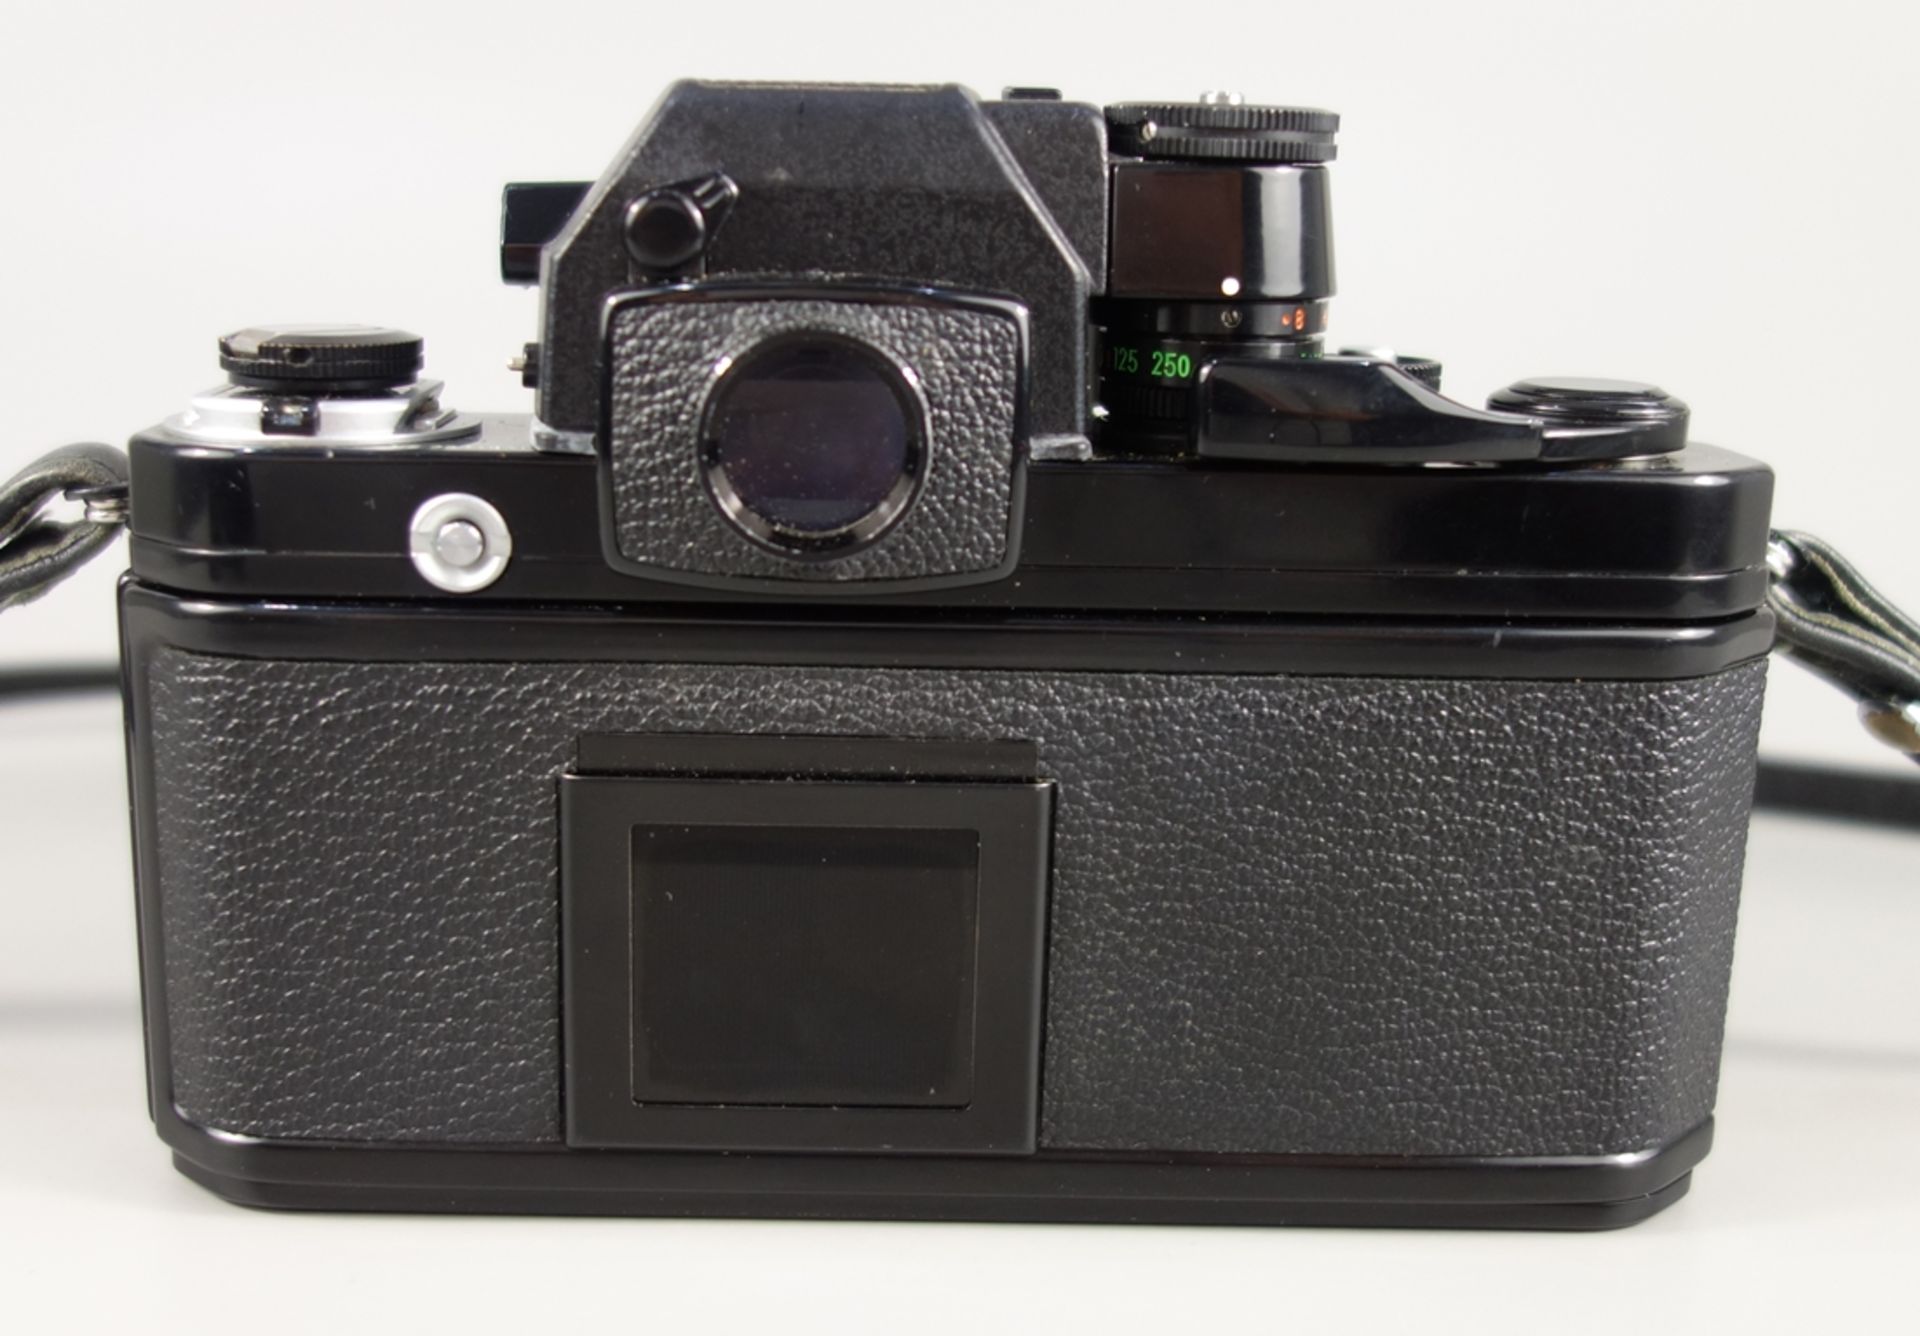 Nikon F2 SB, Spiegelreflexkamera, 1970er Jahre, Serien-Nr. 7574801, mit Shift-Objektiv Nikon PC- - Bild 4 aus 7